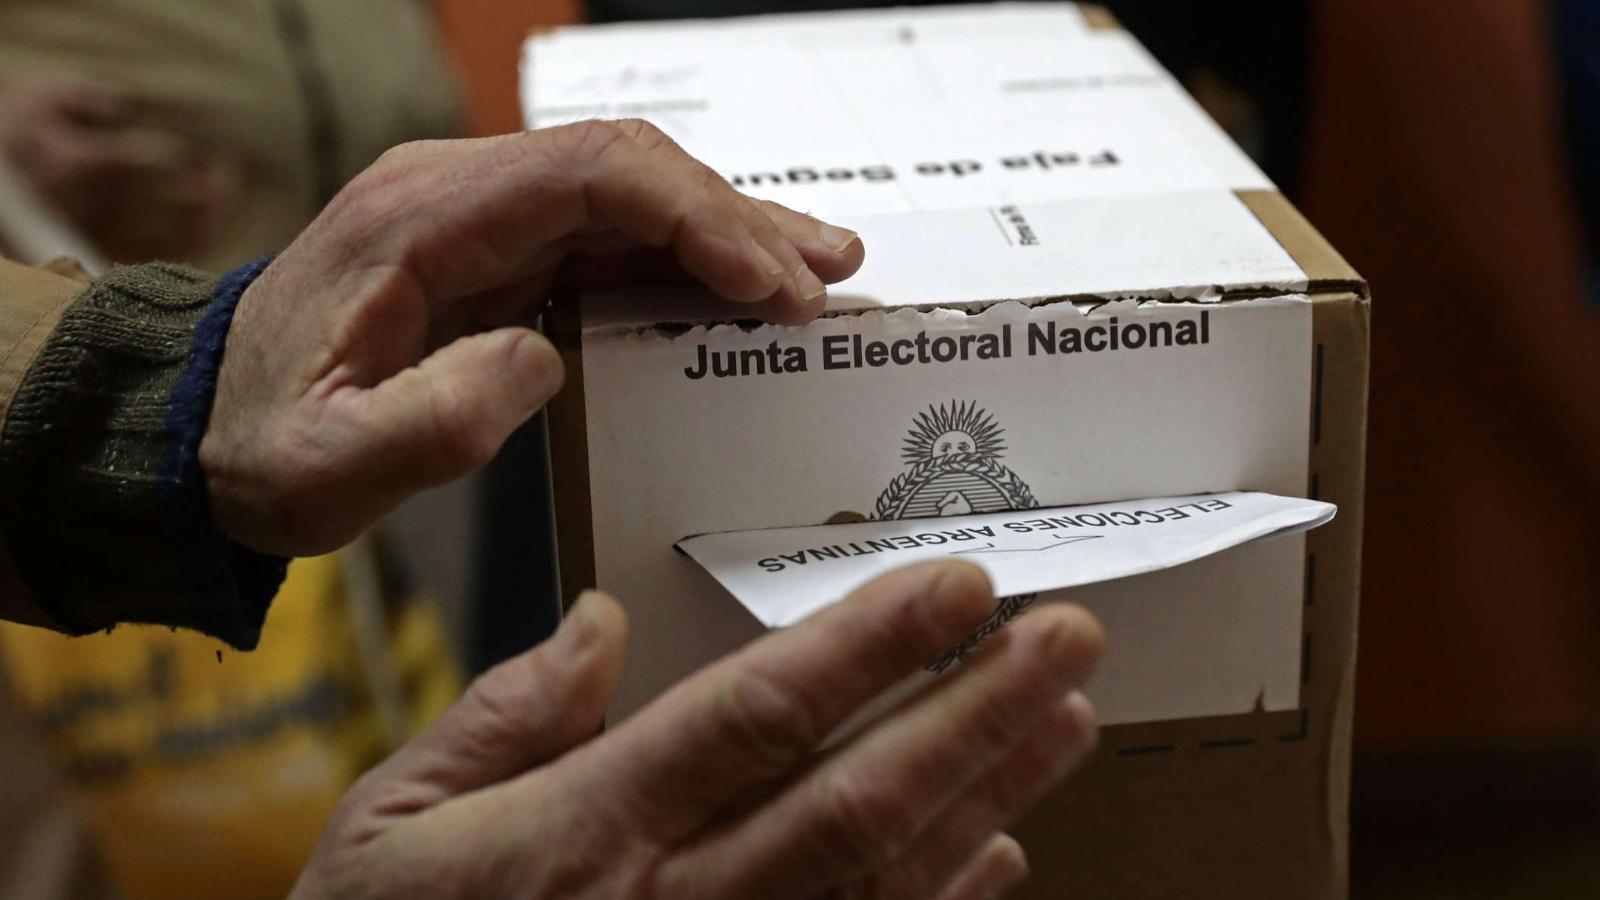 Voto en blanco, nulo e impugnado en las elecciones de Argentina: ¿qué diferencias hay?